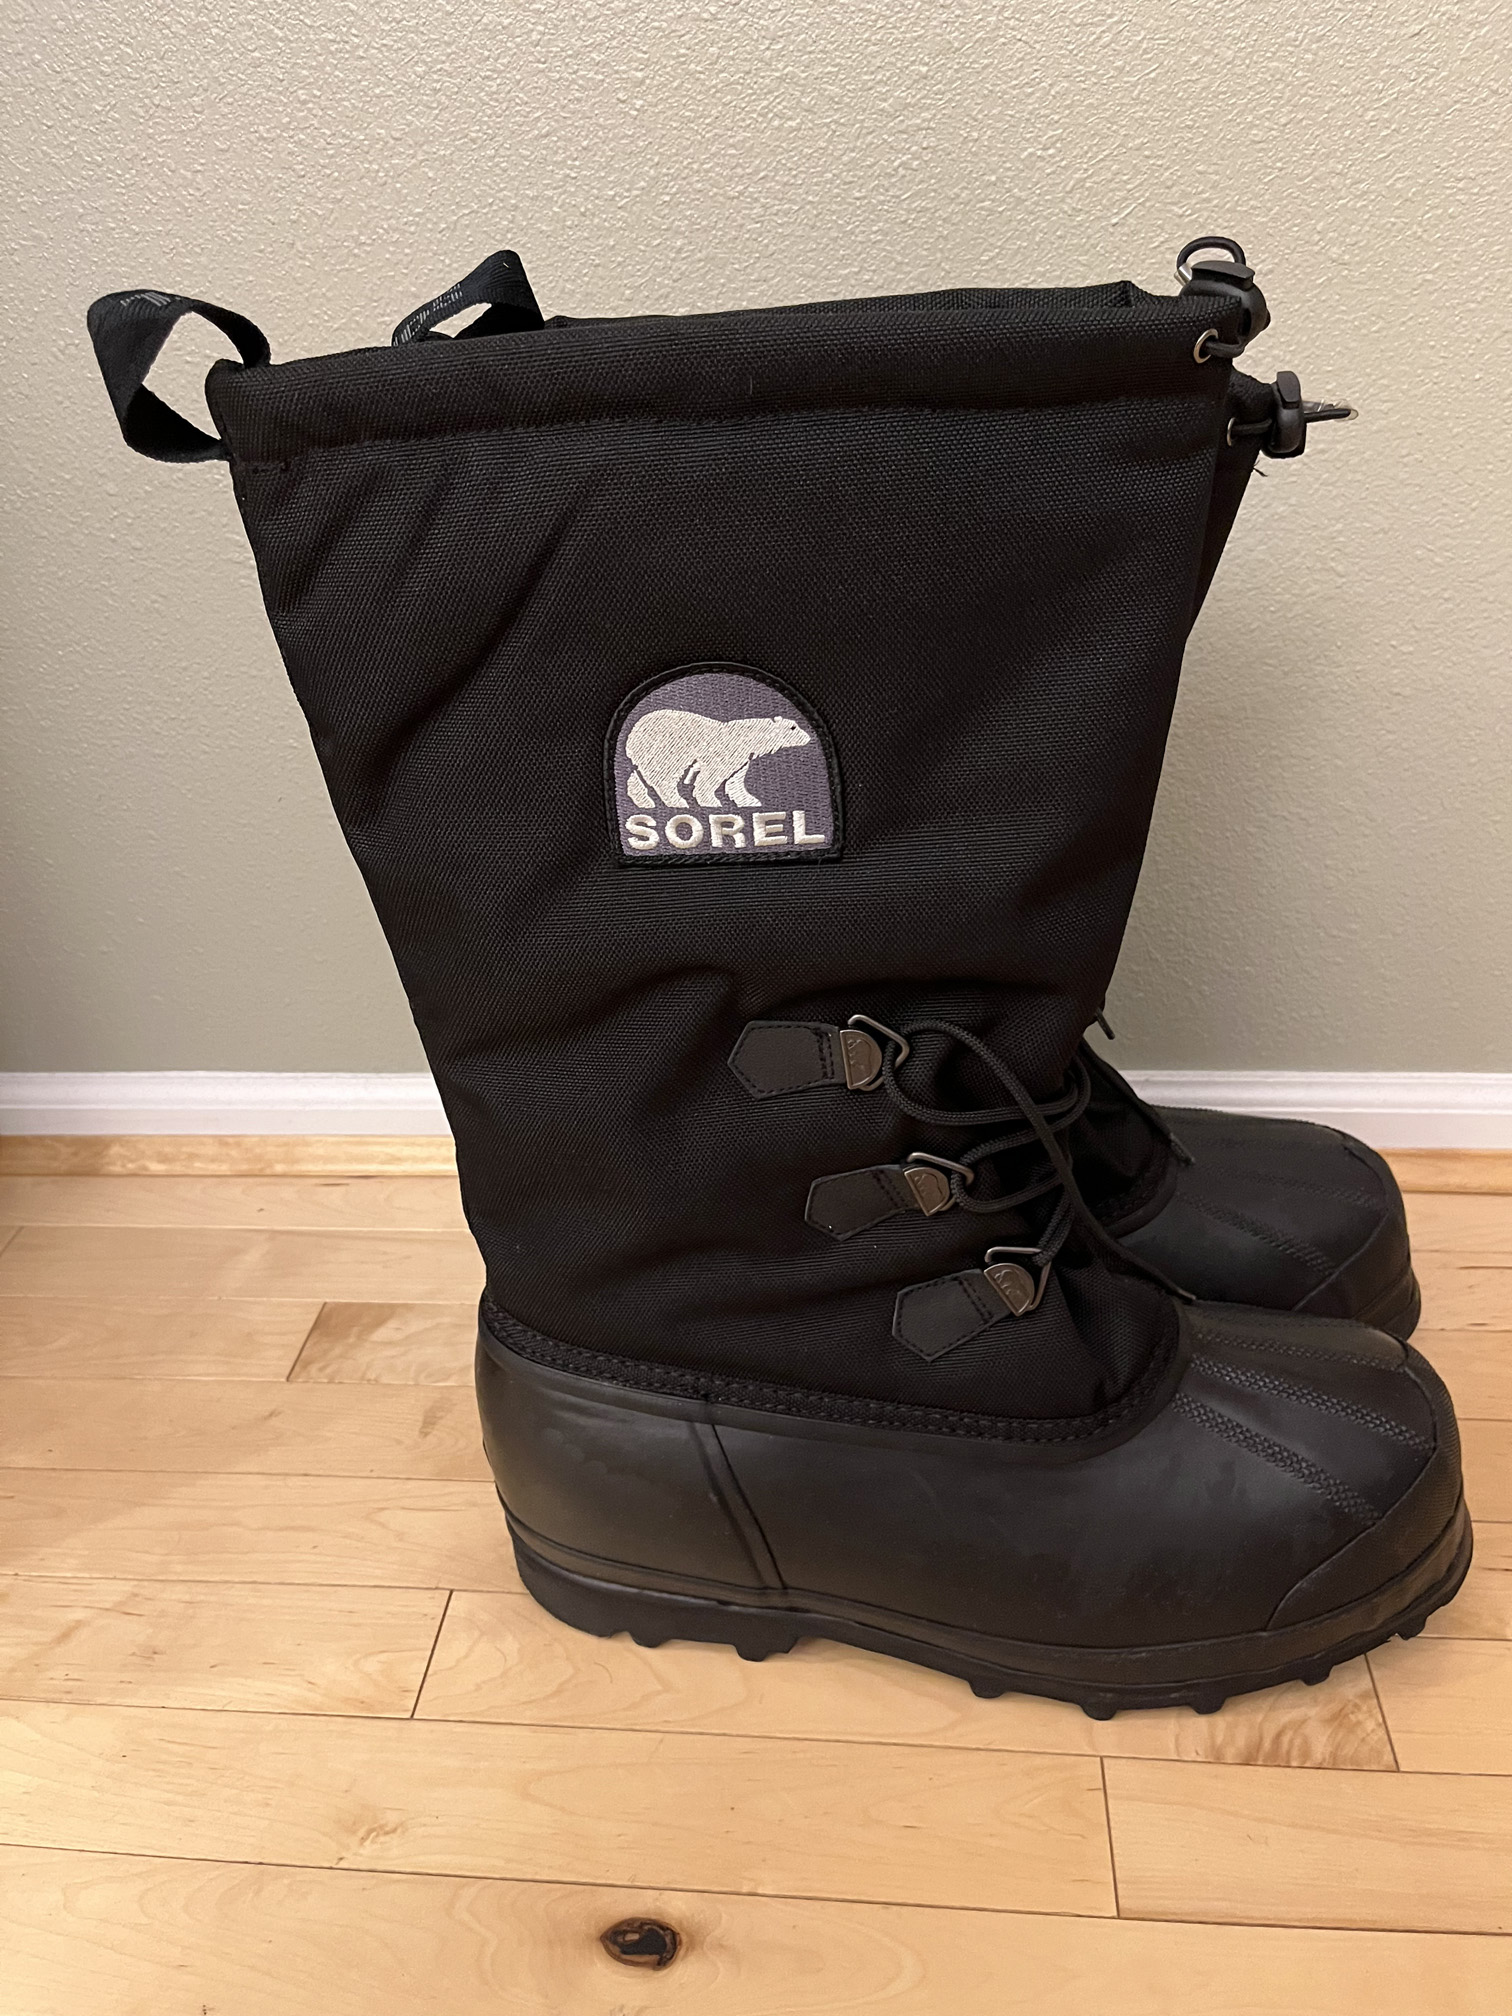 Sorel Glacier Winter Boots - Backpacking Light